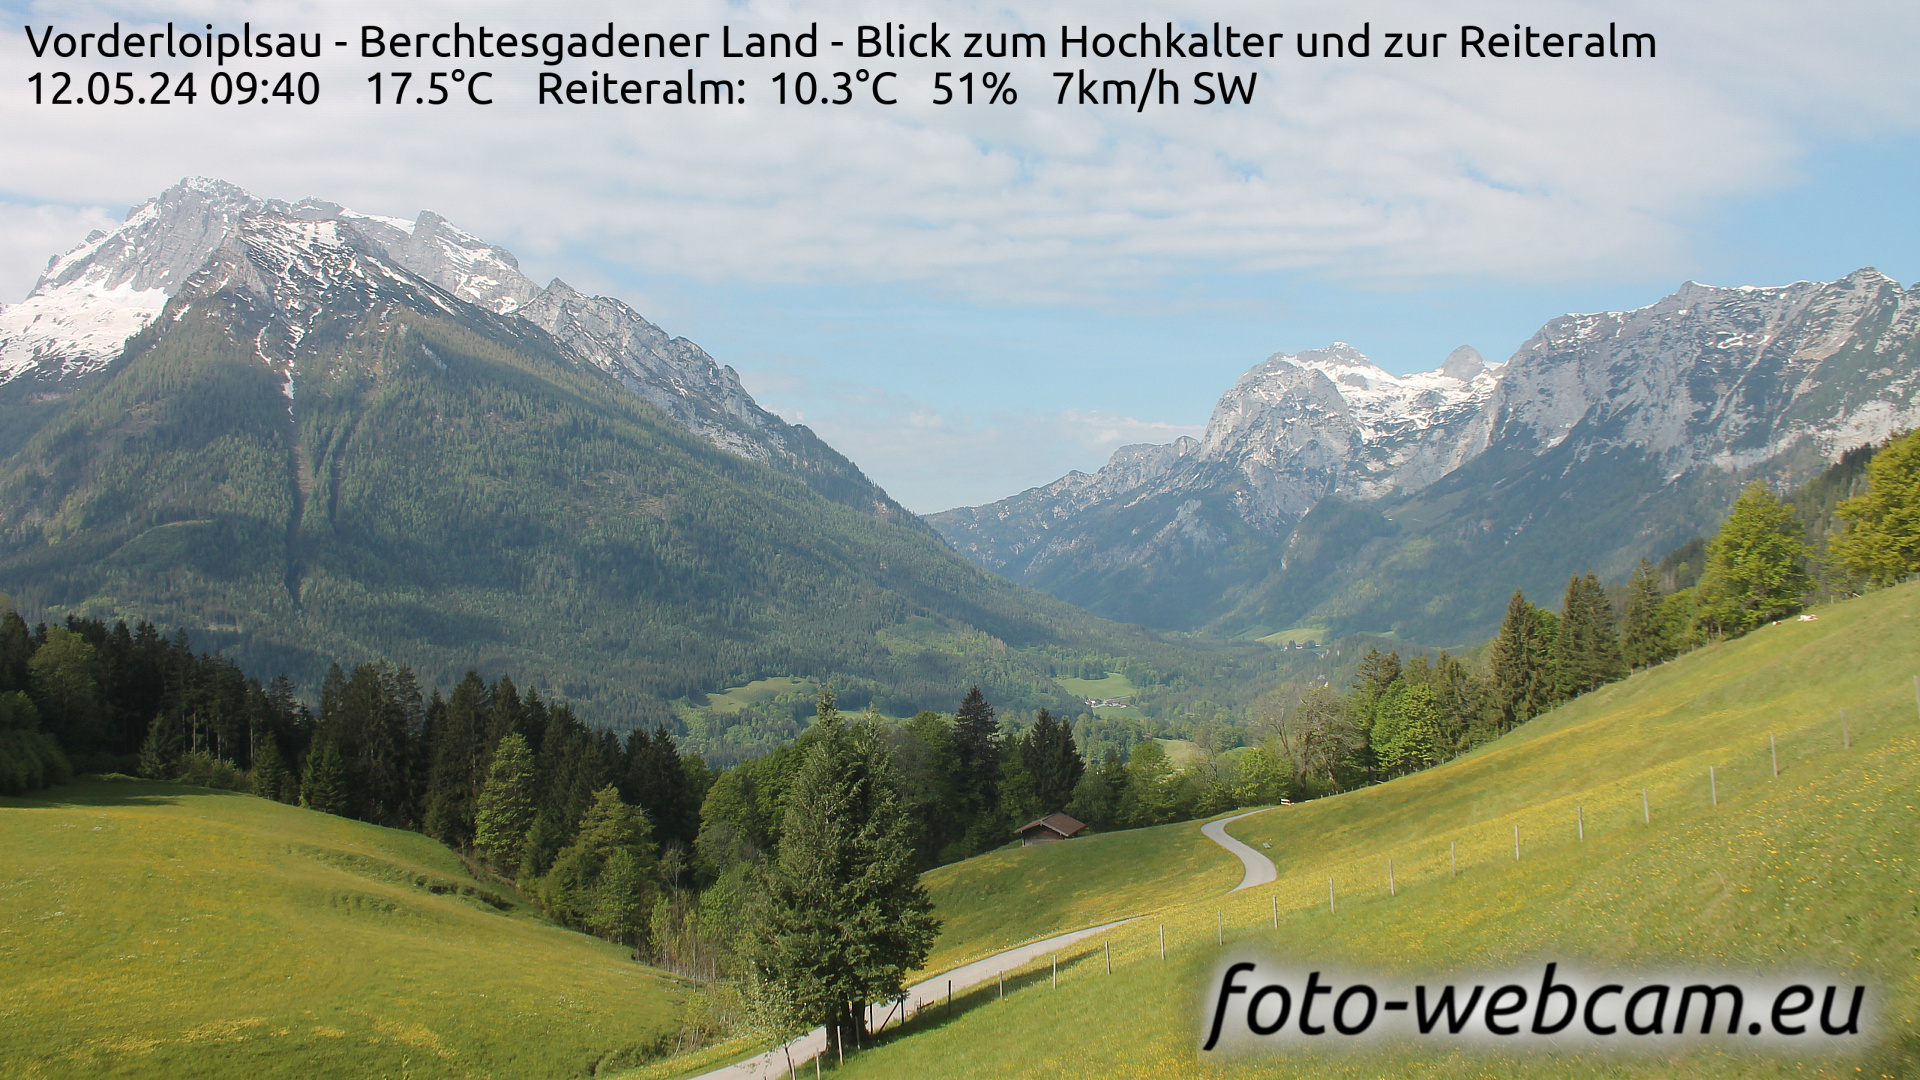 Ramsau bei Berchtesgaden Do. 09:48